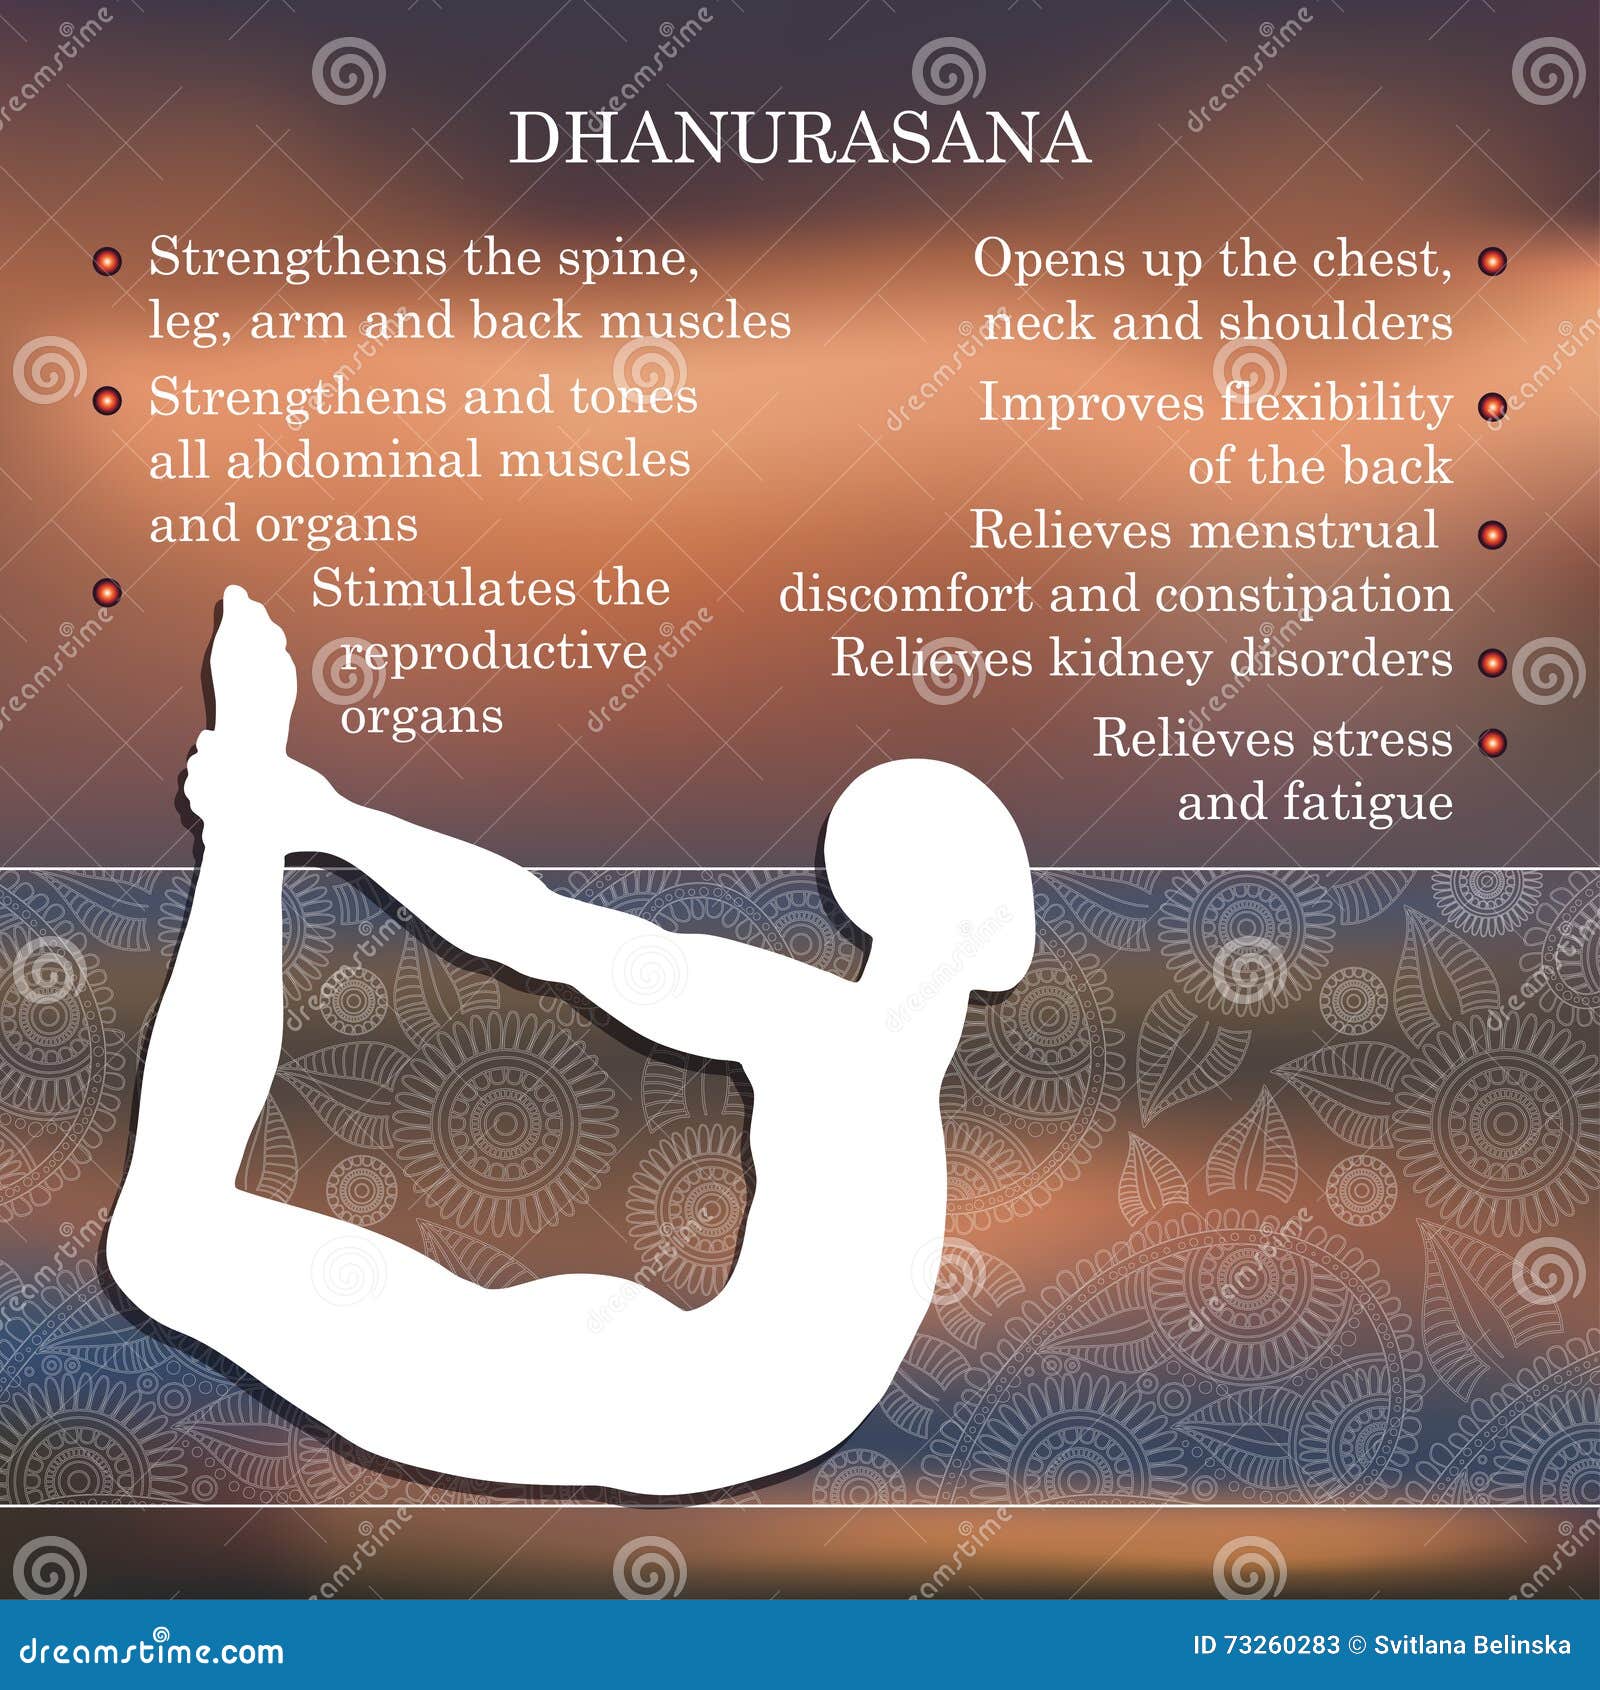 Urdhva Dhanurasana / Raised Bow Pose | Asana – International Yoga Journal